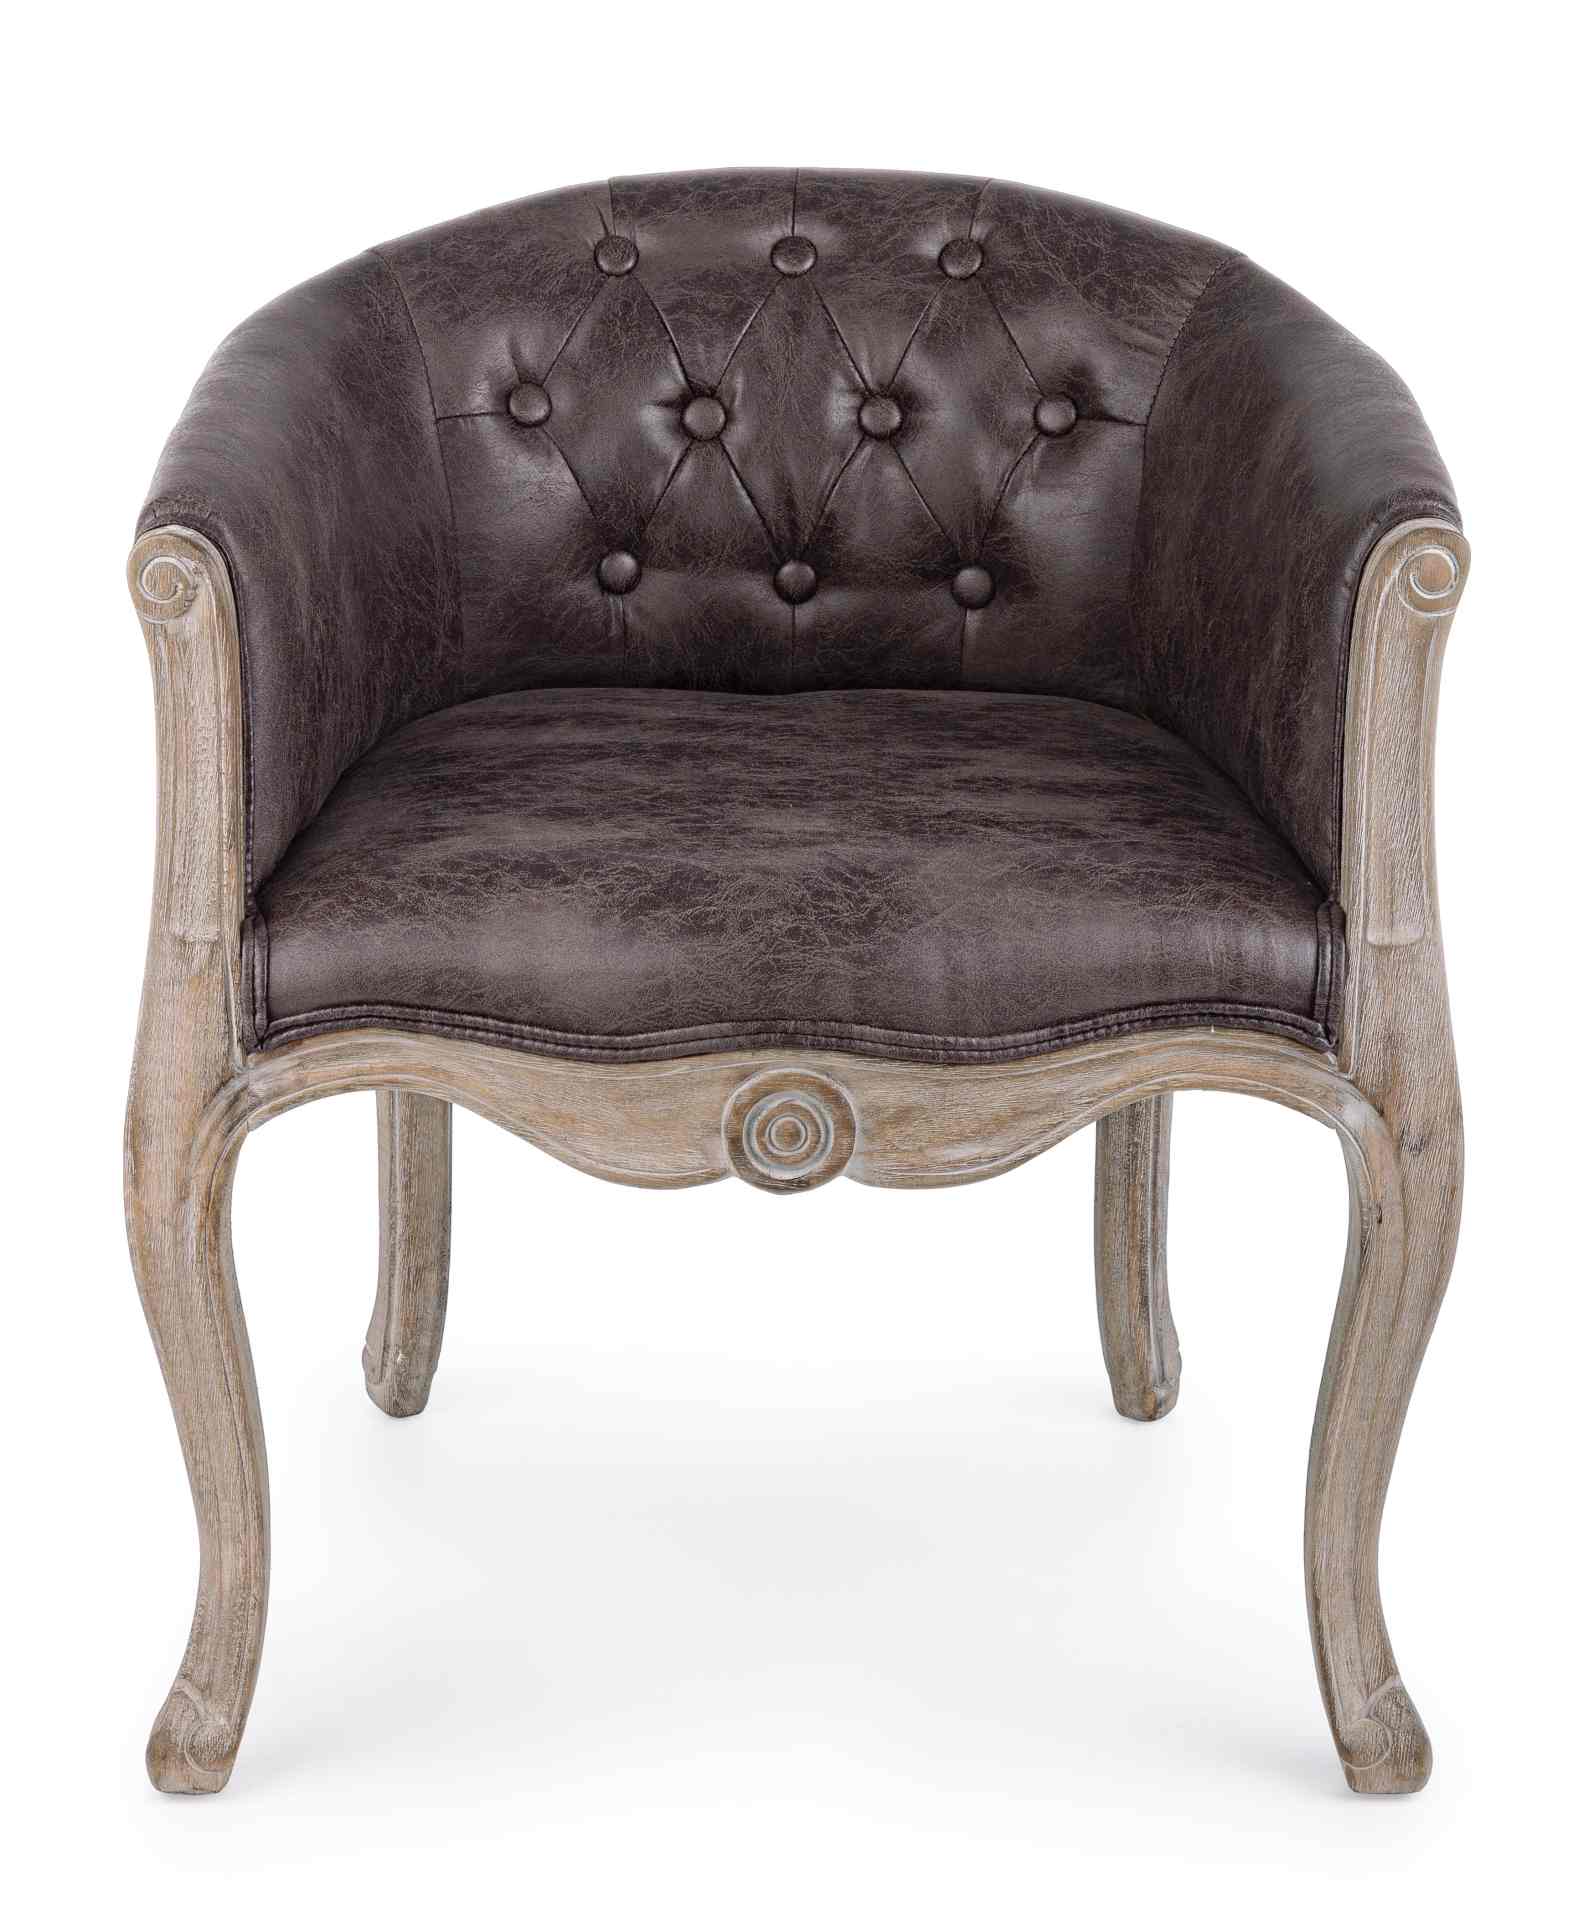 Der Sessel Diva überzeugt mit seinem klassischen Design. Gefertigt wurde er aus Kunstleder, welches einen braunen Farbton besitzt. Das Gestell ist aus Kautschukholz und hat eine natürliche Farbe. Der Sessel besitzt eine Sitzhöhe von 43 cm. Die Breite betr